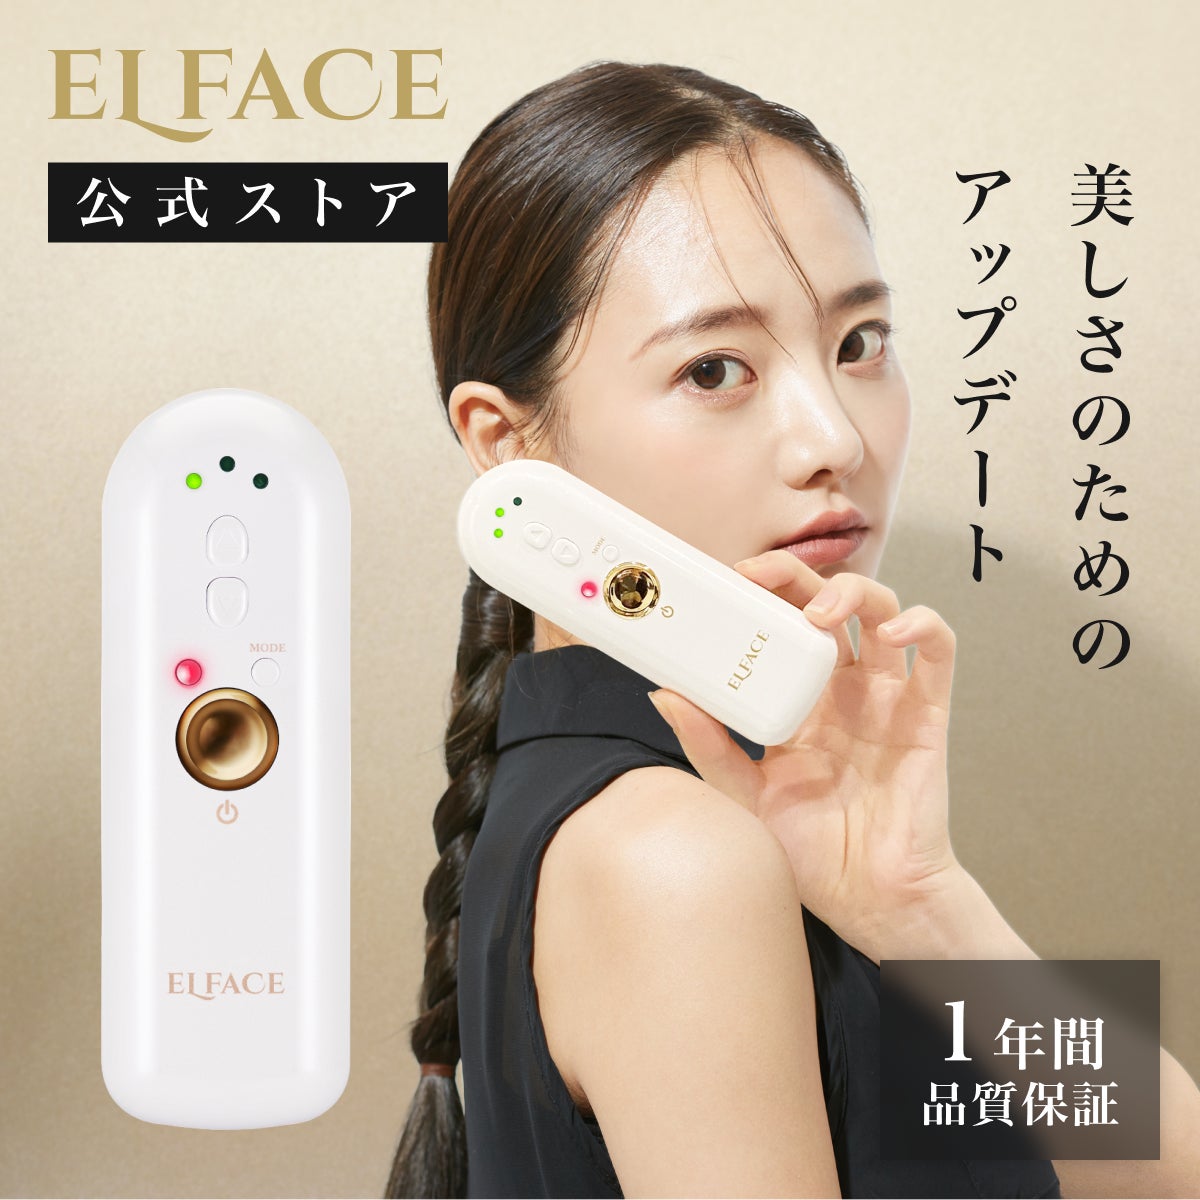 Qoo10メガ割で買うべき美顔器ELFACE(エルフェイス)！8月・9月限定でメガ割クーポン＋ショップクーポンを使って大幅割引で購入するチャンス！